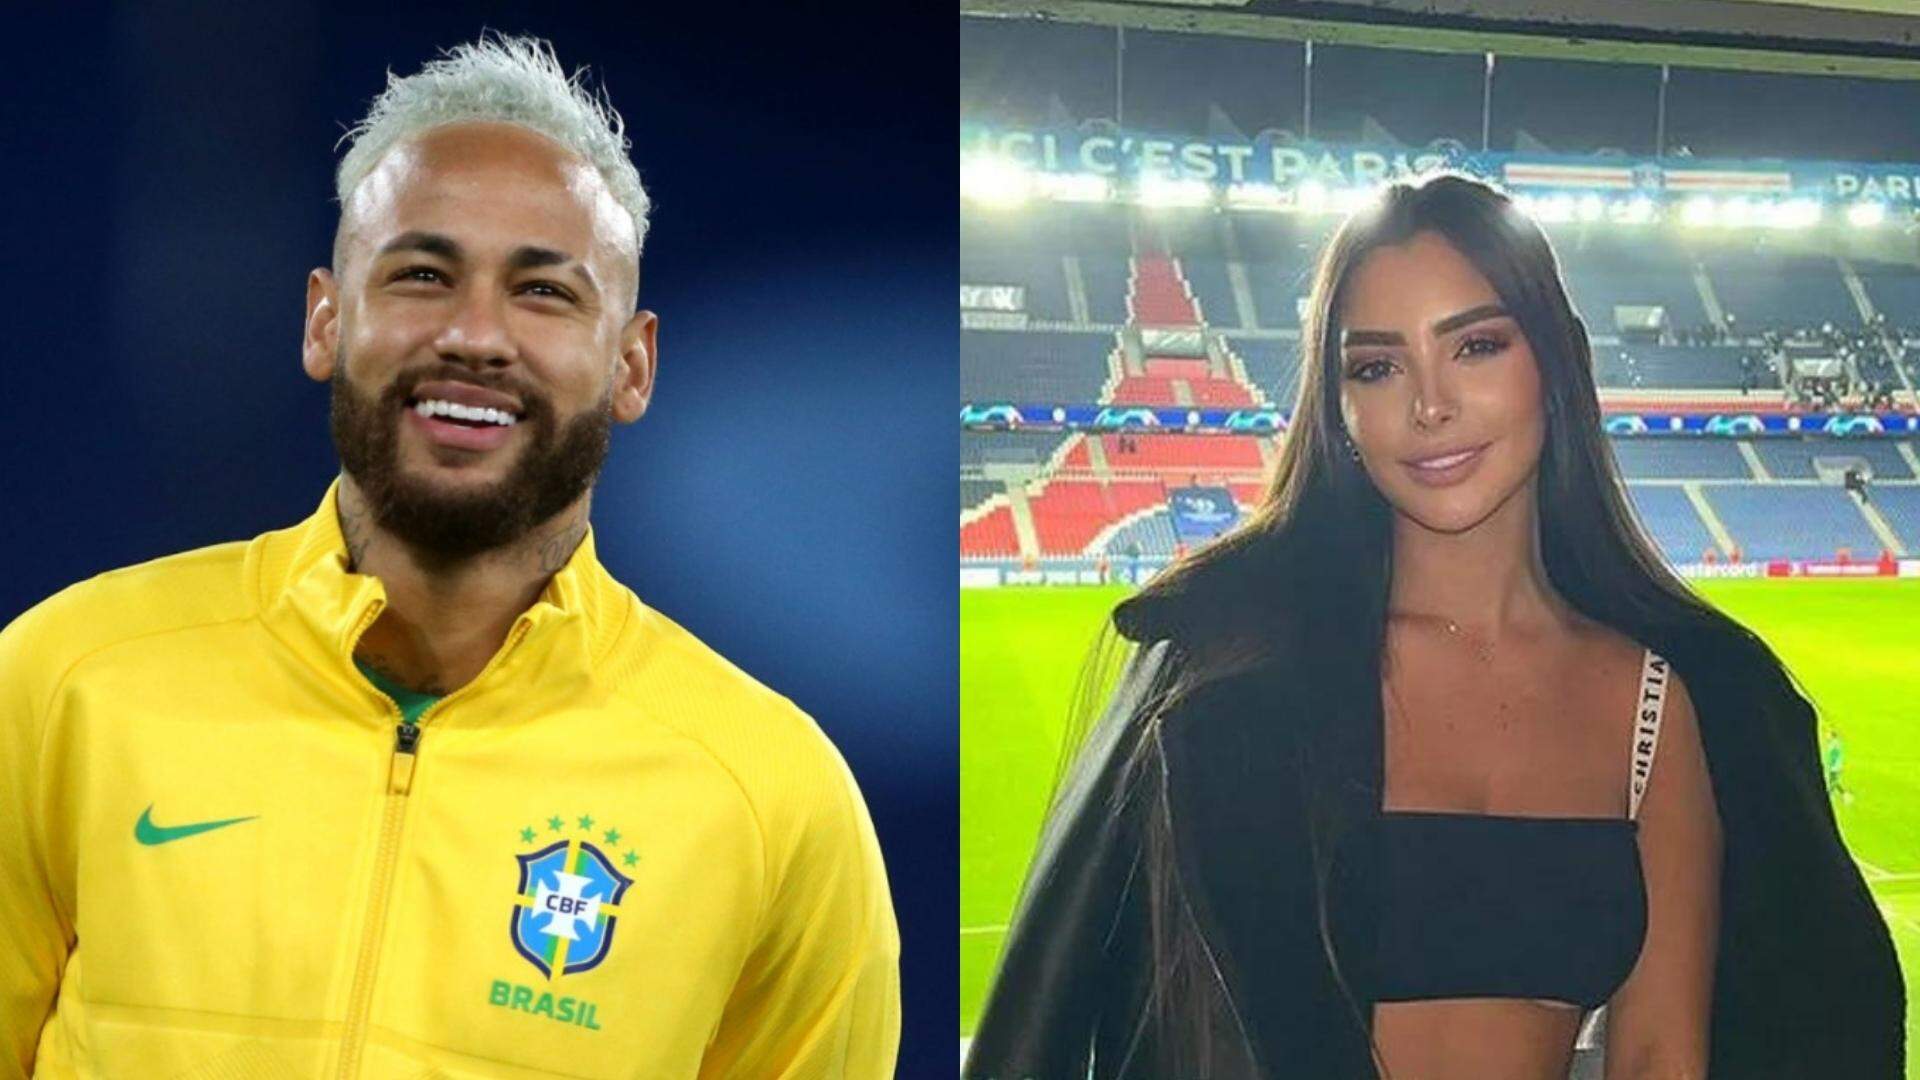 Tá rolando? Fãs especulam suposto relacionamento entre Neymar e influencer venezuelana